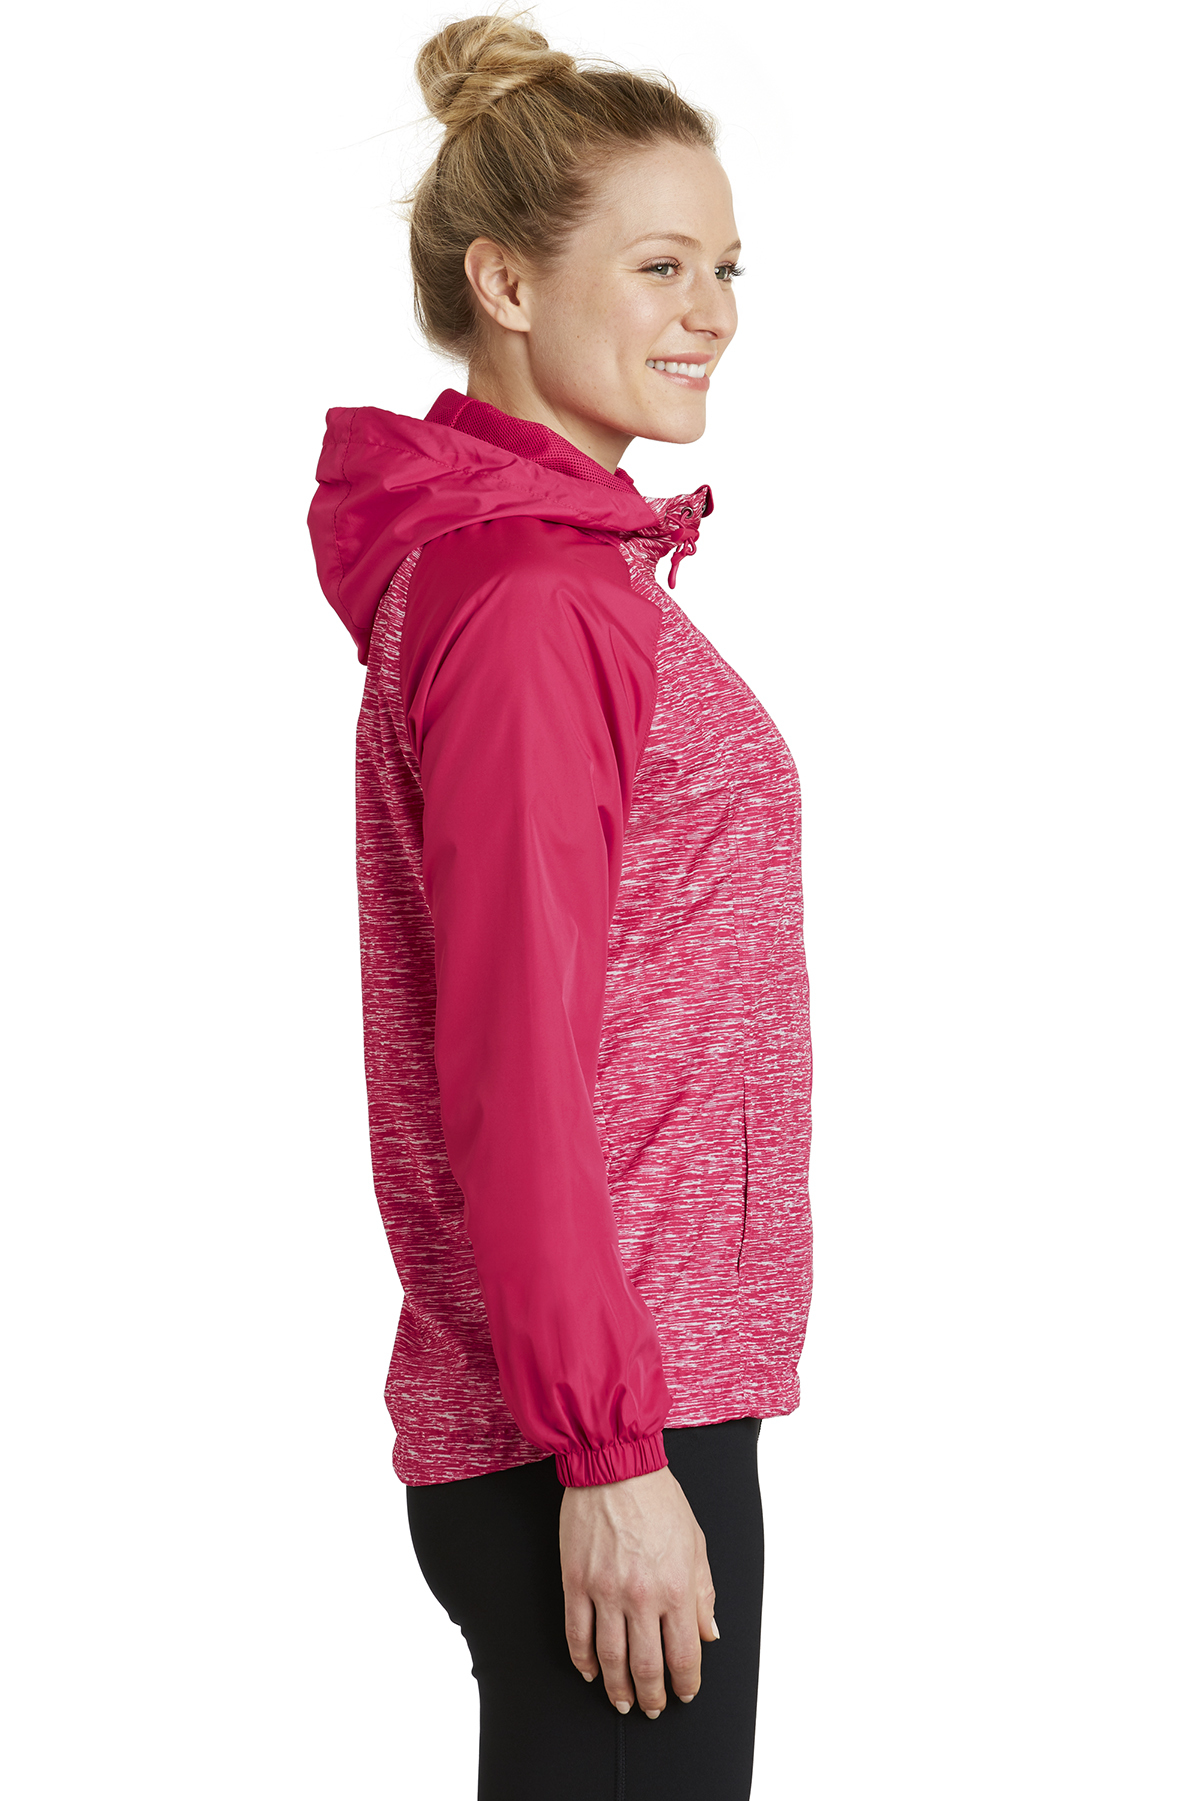 | Raglan Wind | Sport-Tek Colorblock Ladies Hooded Jacket Product Sport-Tek Heather